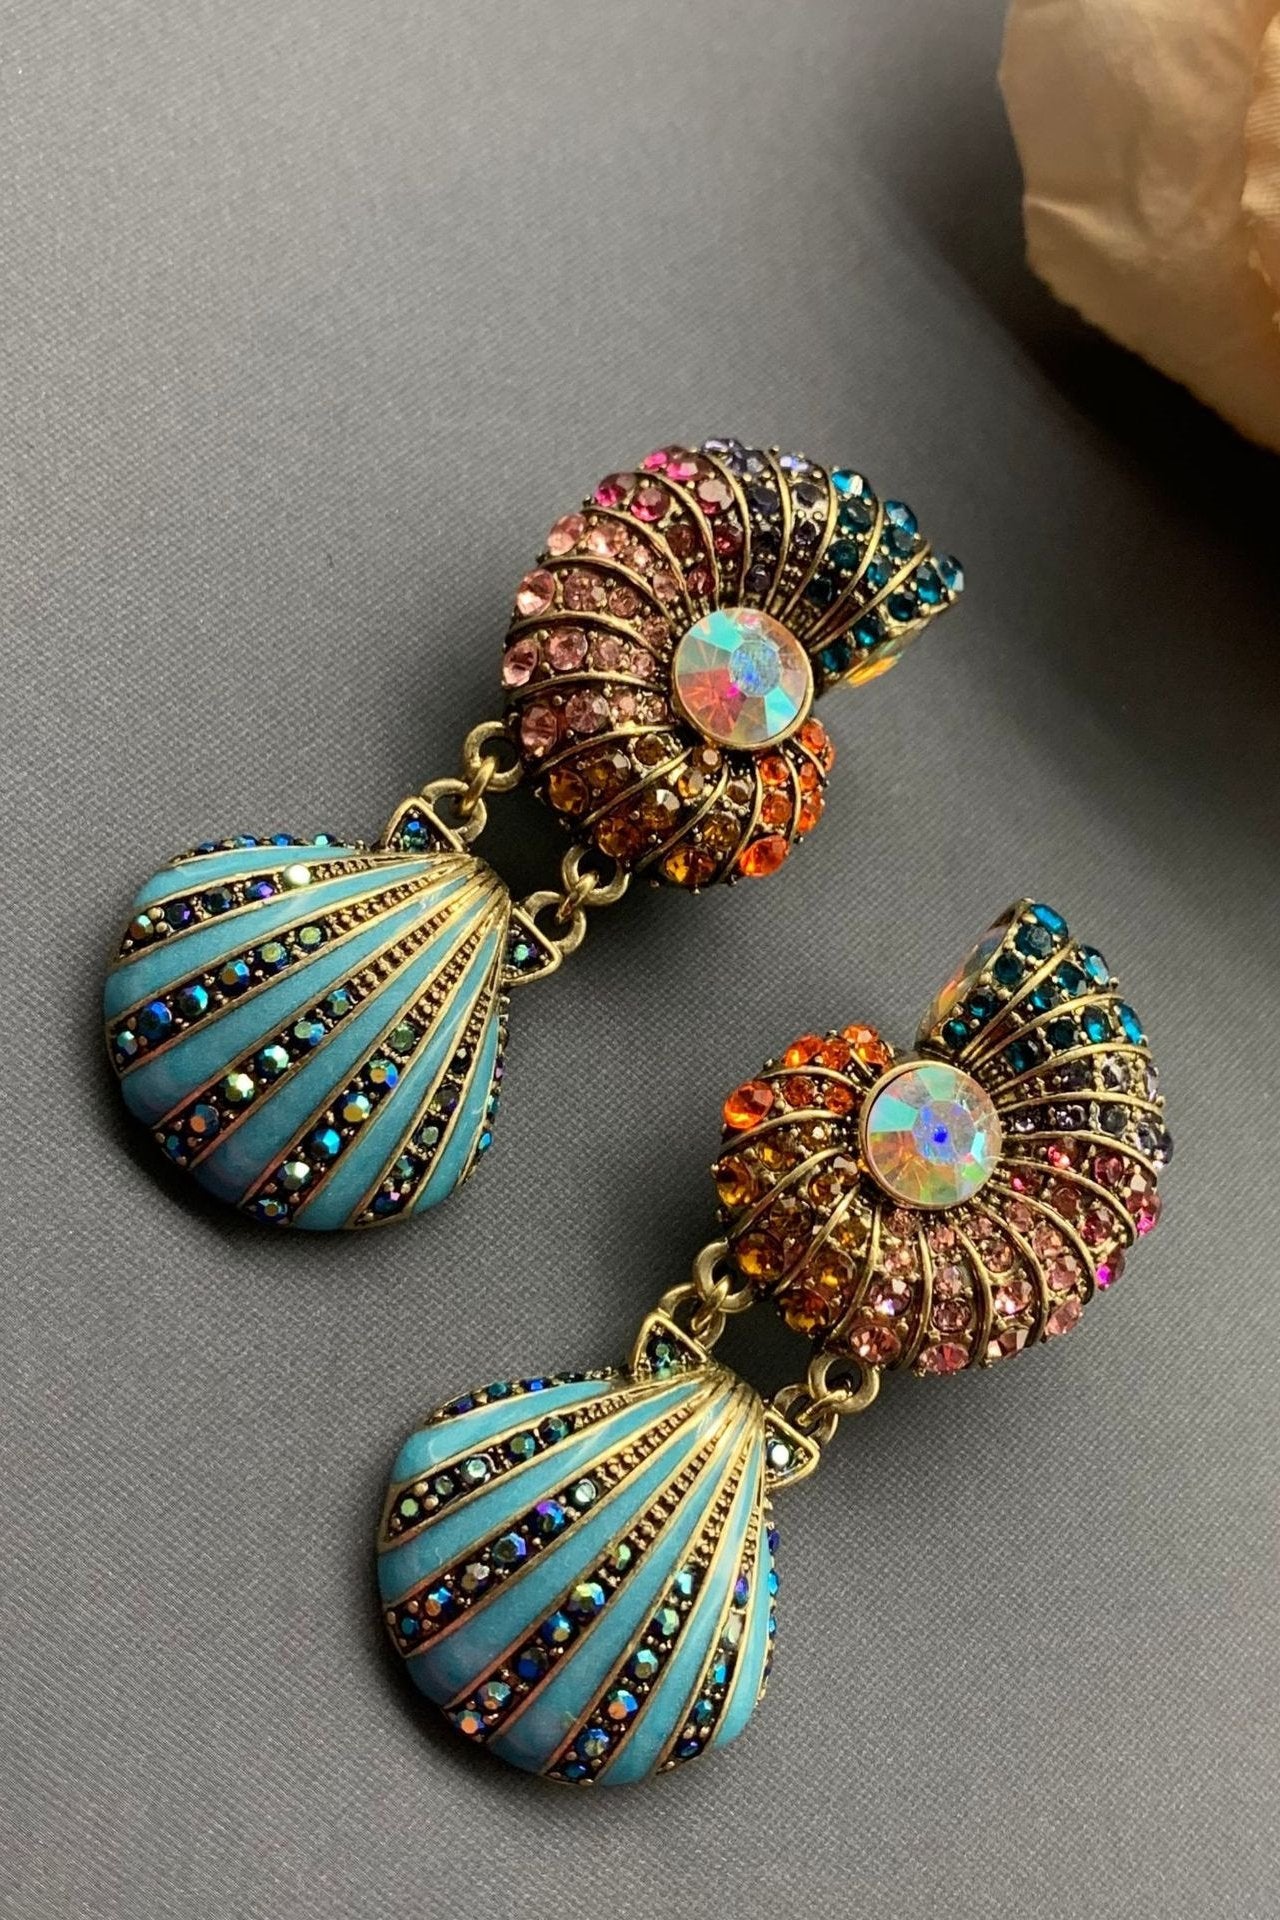 Amalia Flicker Shell Earrings